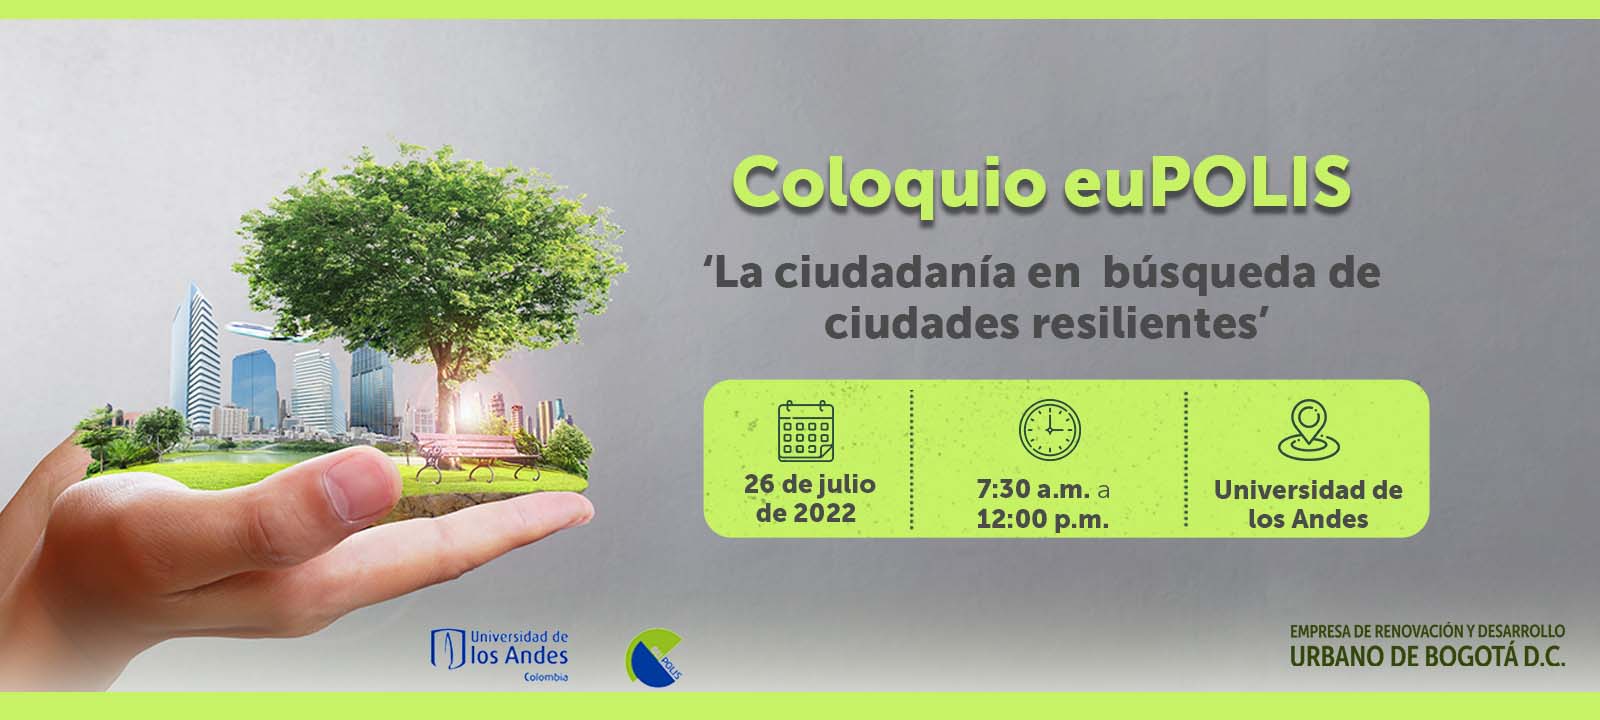 Coloquio euPOLIS | La ciudadanía en búsqueda de ciudades resilientes